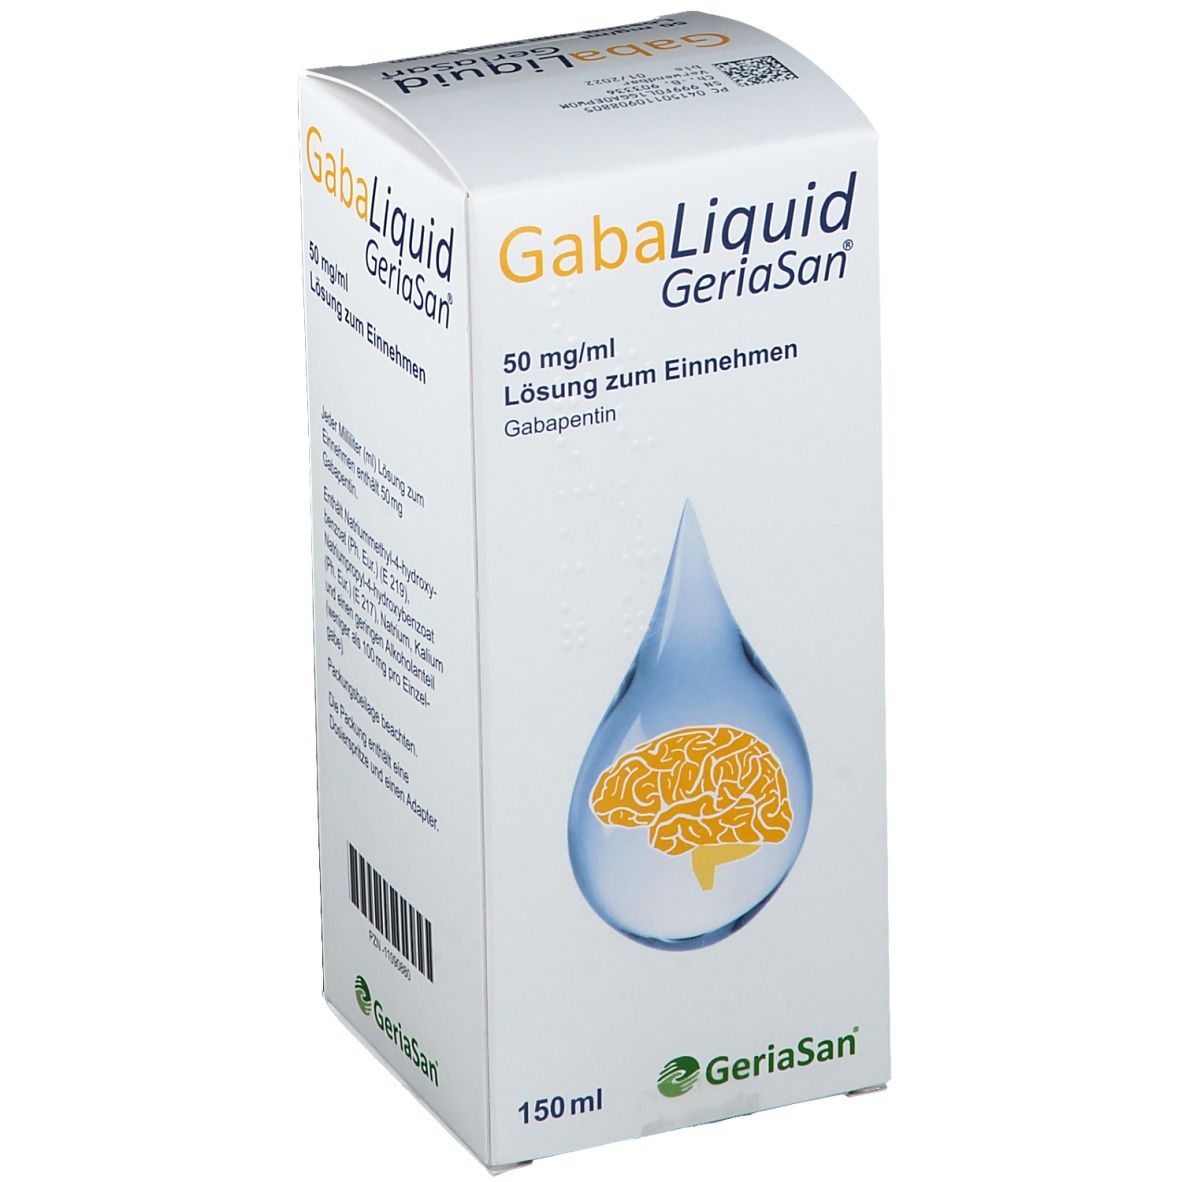 GabaLiquid GeriaSan® 50 mg/ml